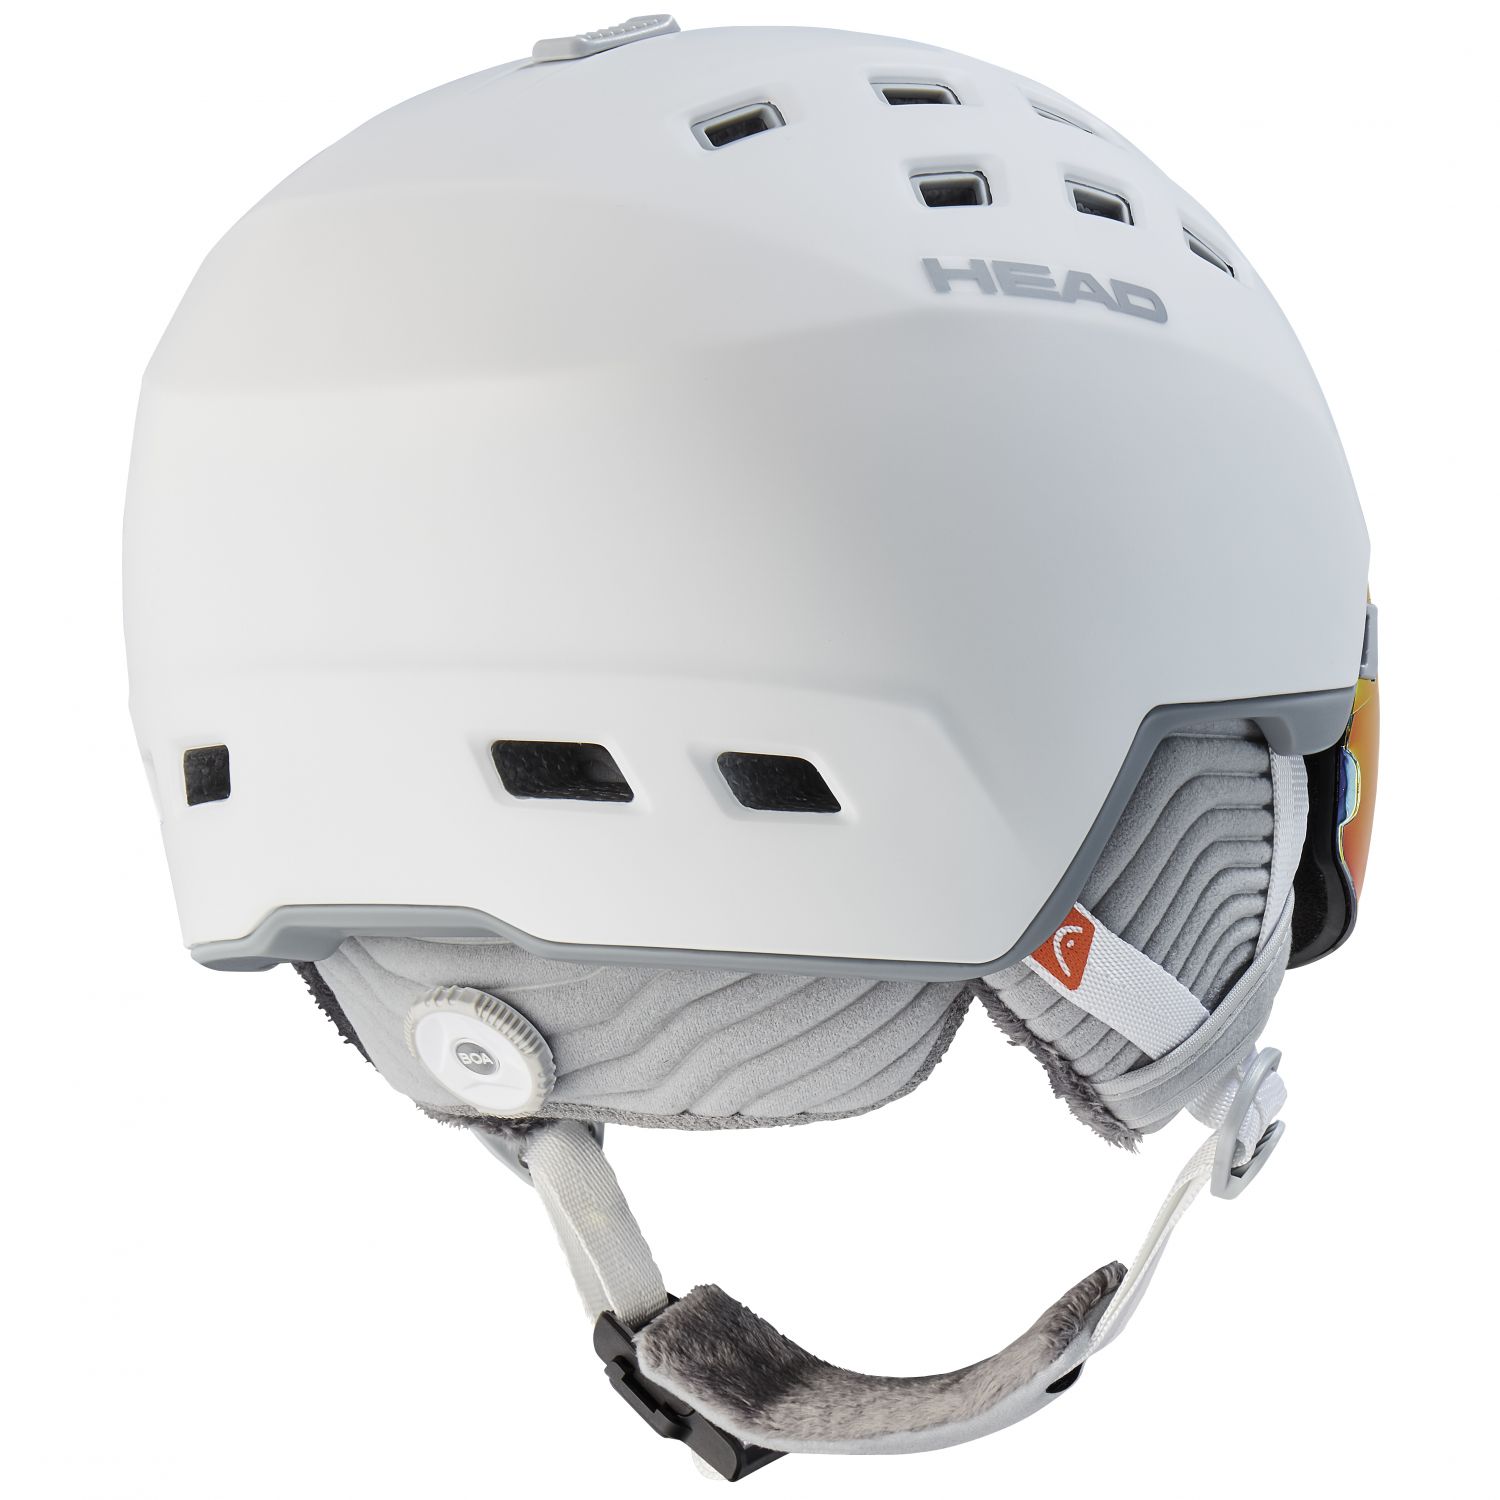 Head Rachel 5K Pola, casque de ski à visière, blanc